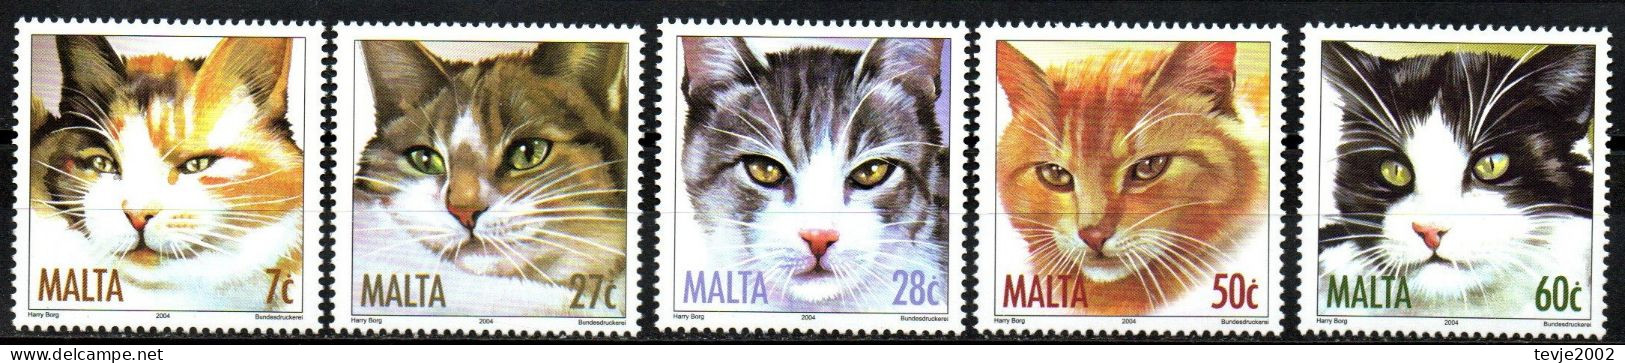 Malta 2004 - Mi.Nr. 1319 - 1323 - Postfrisch MNH - Tiere Animals Katzen Cats - Gatti